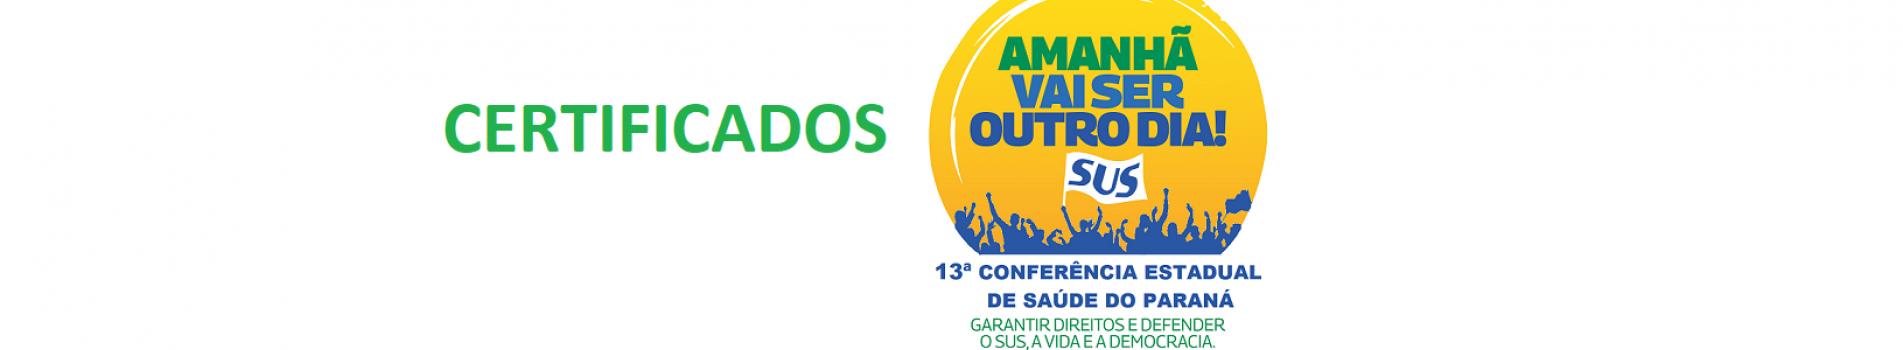 banner certificados 13ª Conferência Estadual de Saúde do Paraná